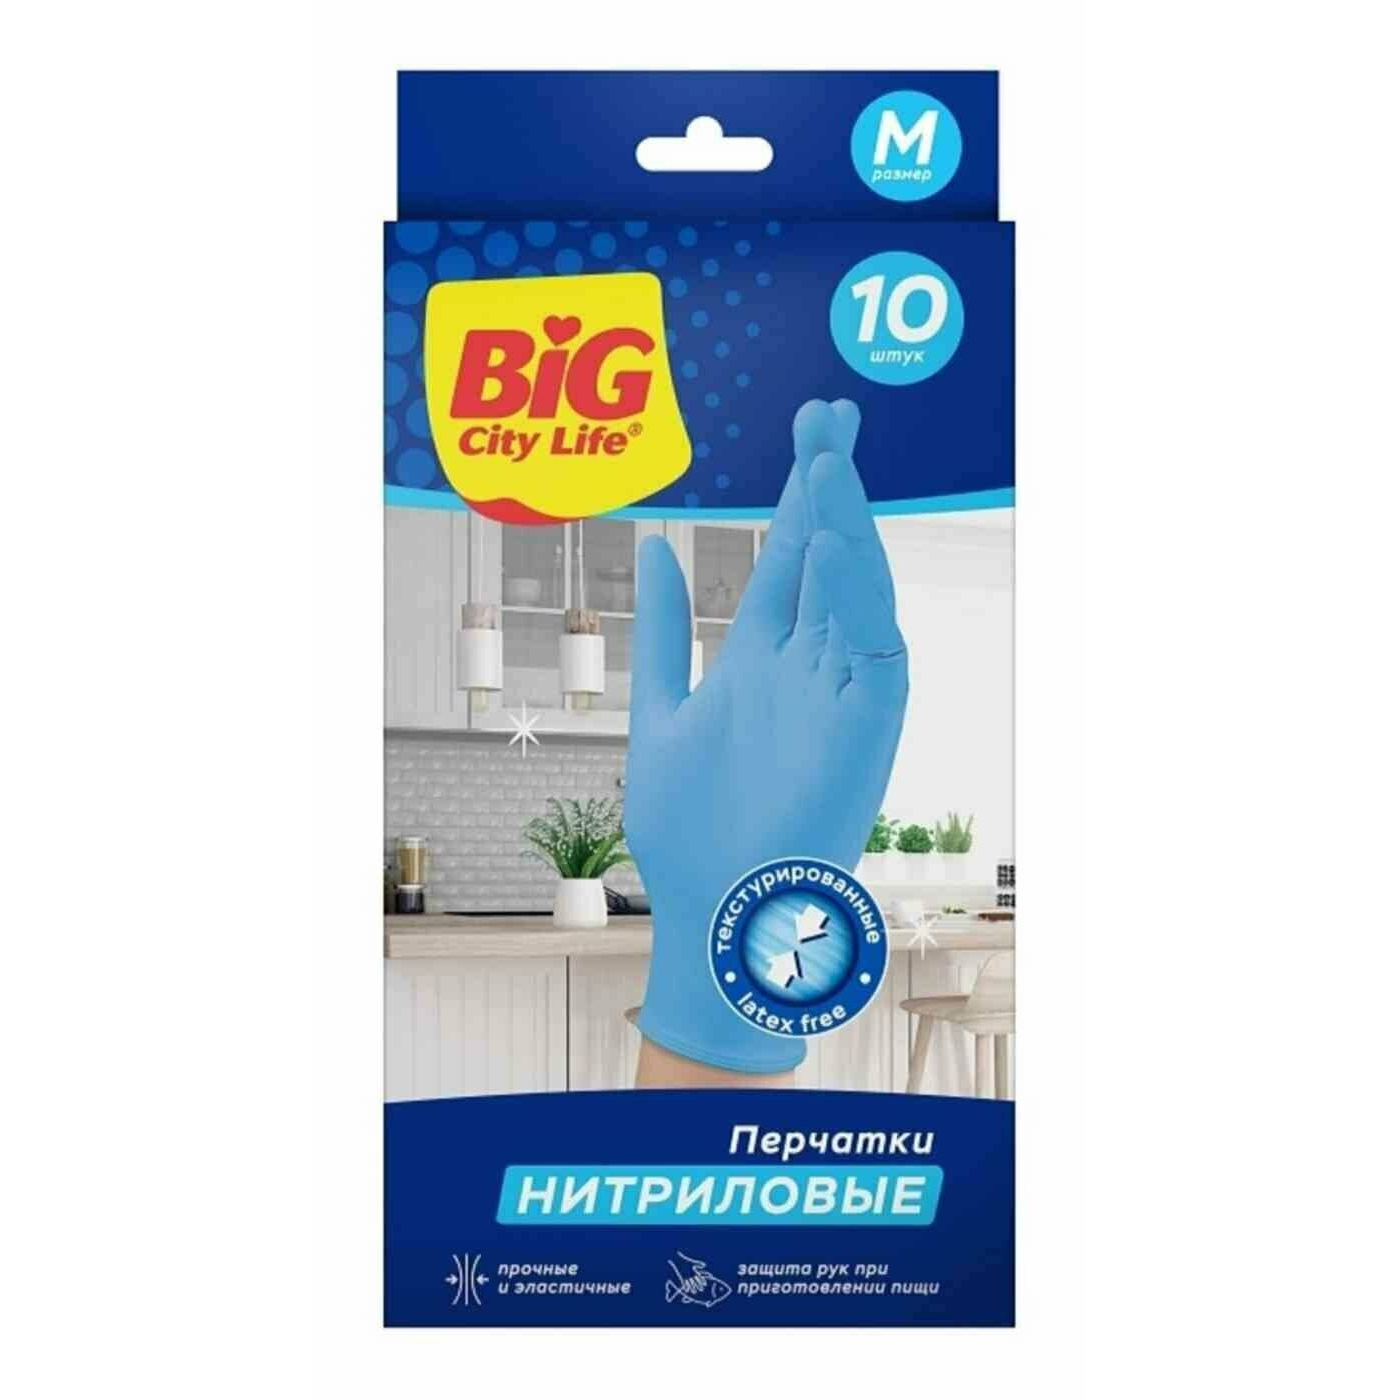 Перчатки Big City Life нитриловые синие M 10 шт перчатки хозяйственные lomberta экстра прочные s